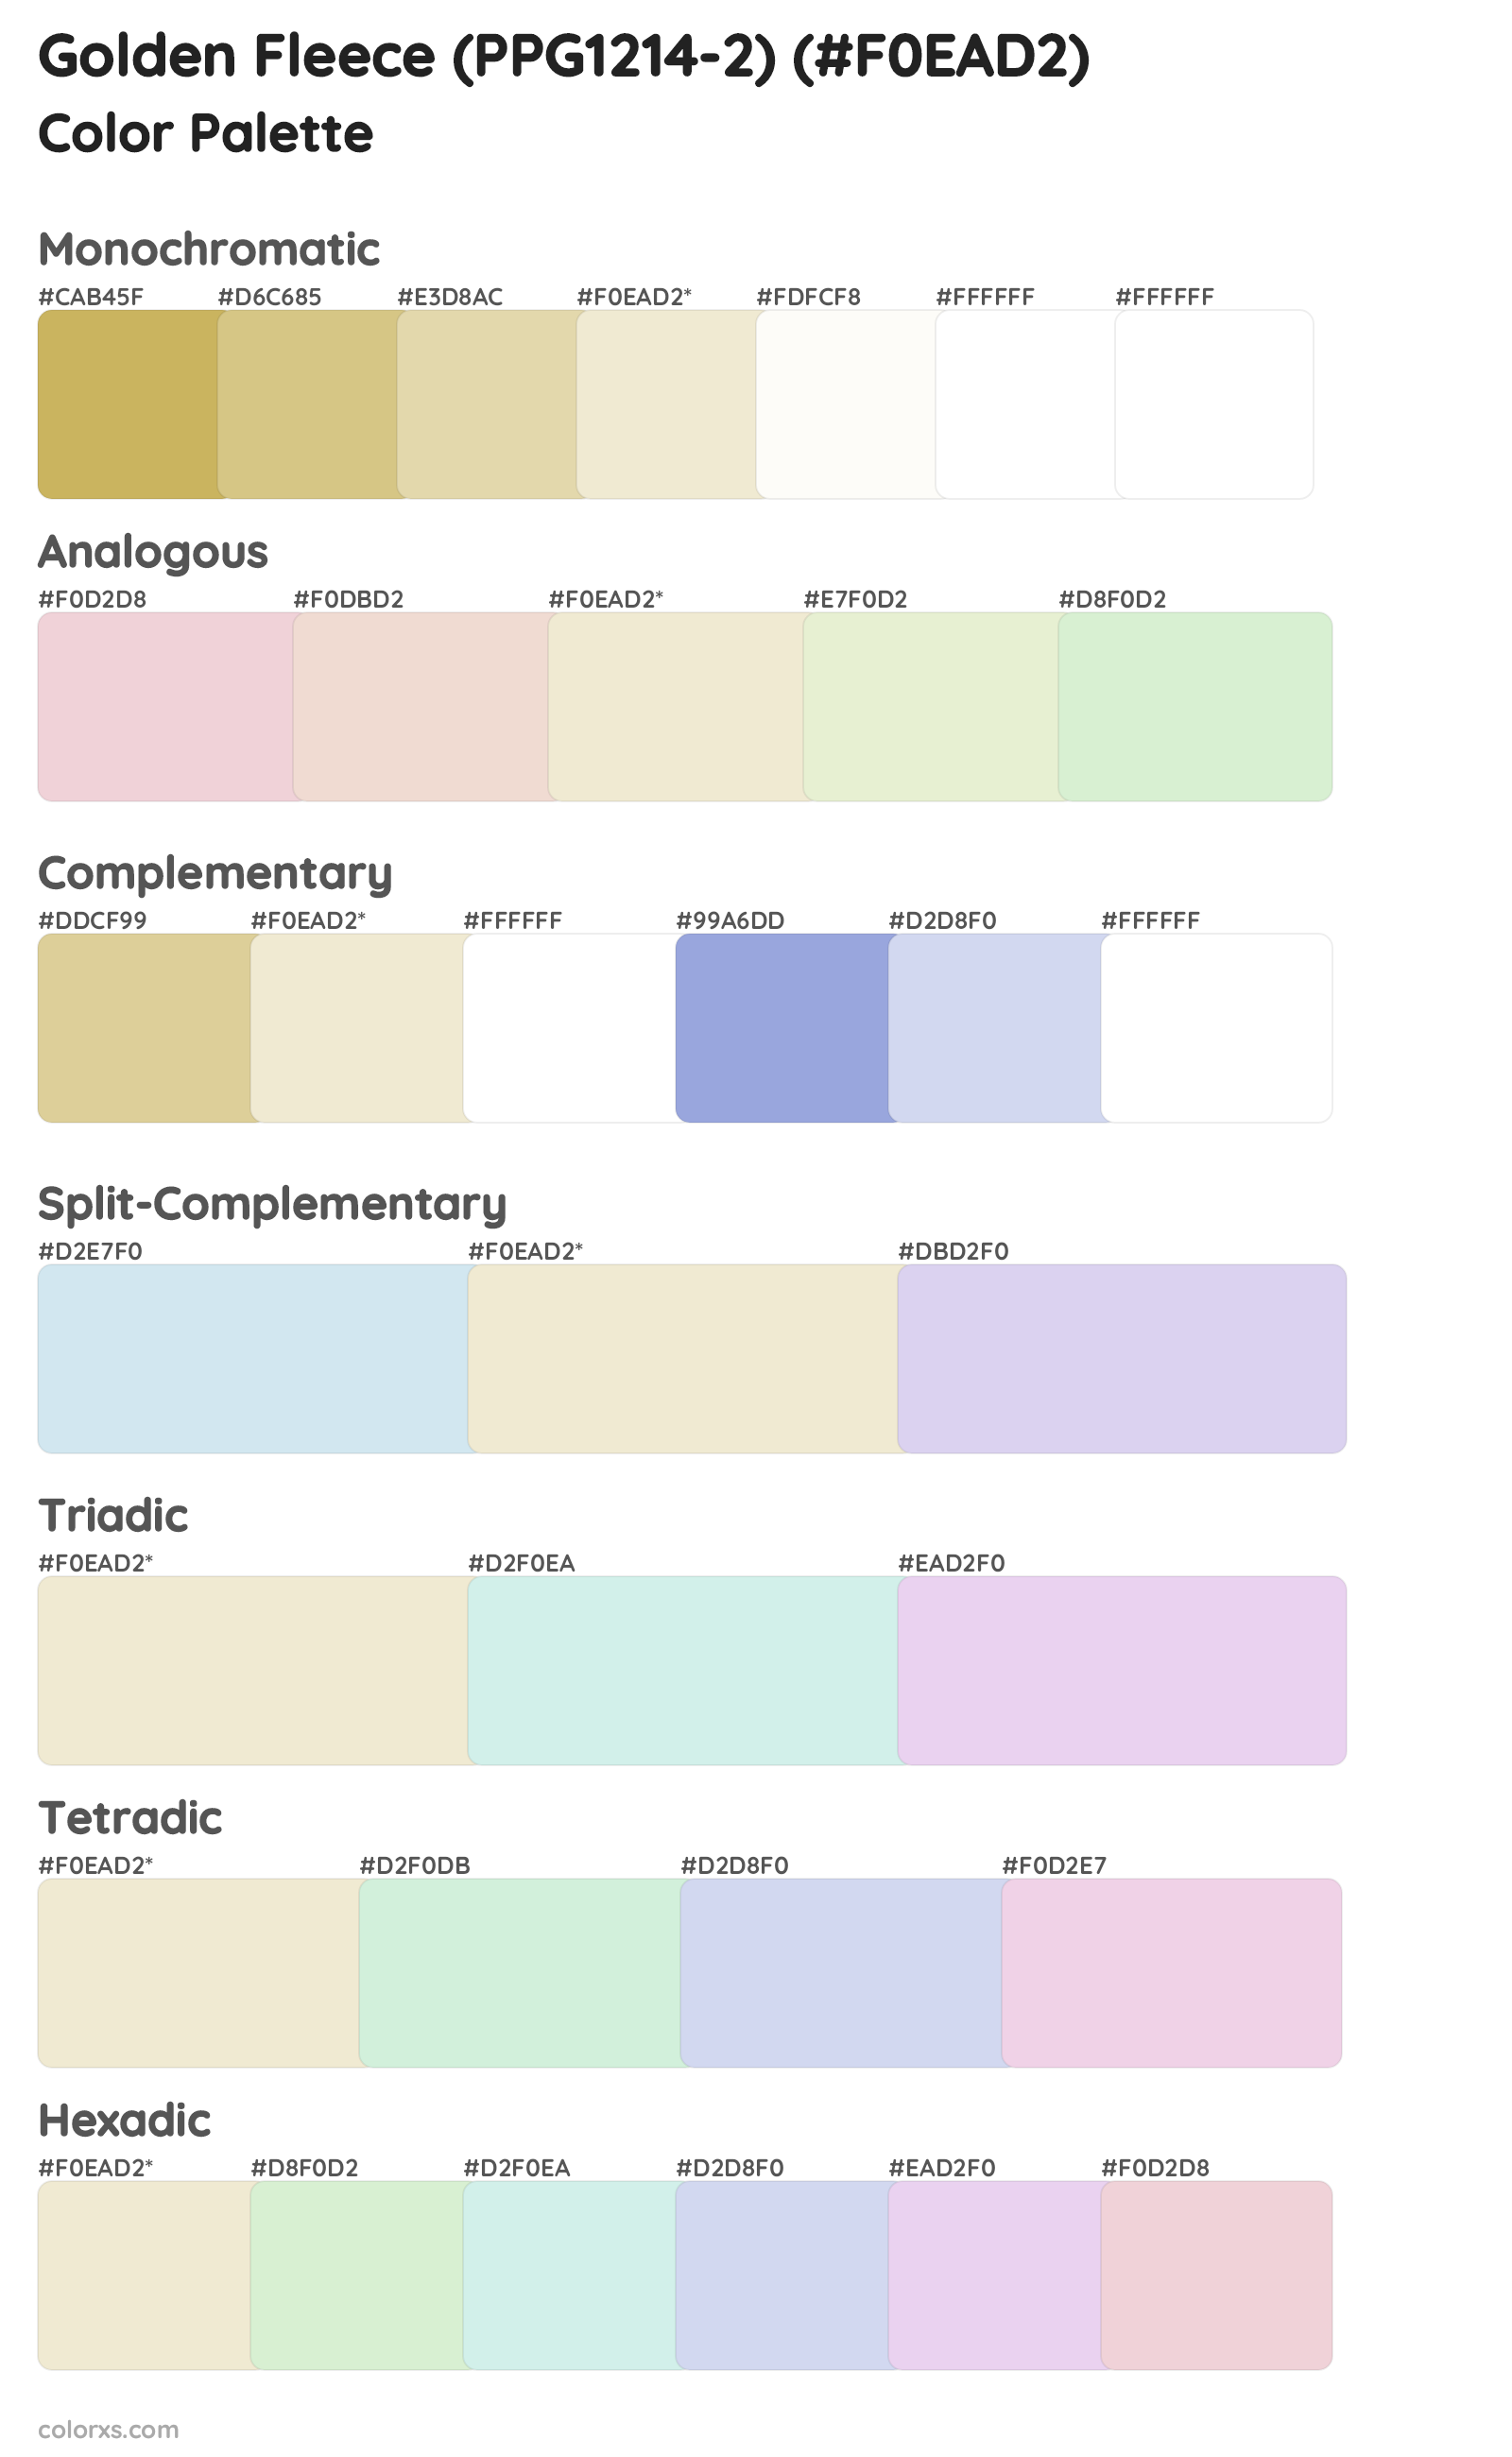 Golden Fleece (PPG1214-2) Color Scheme Palettes